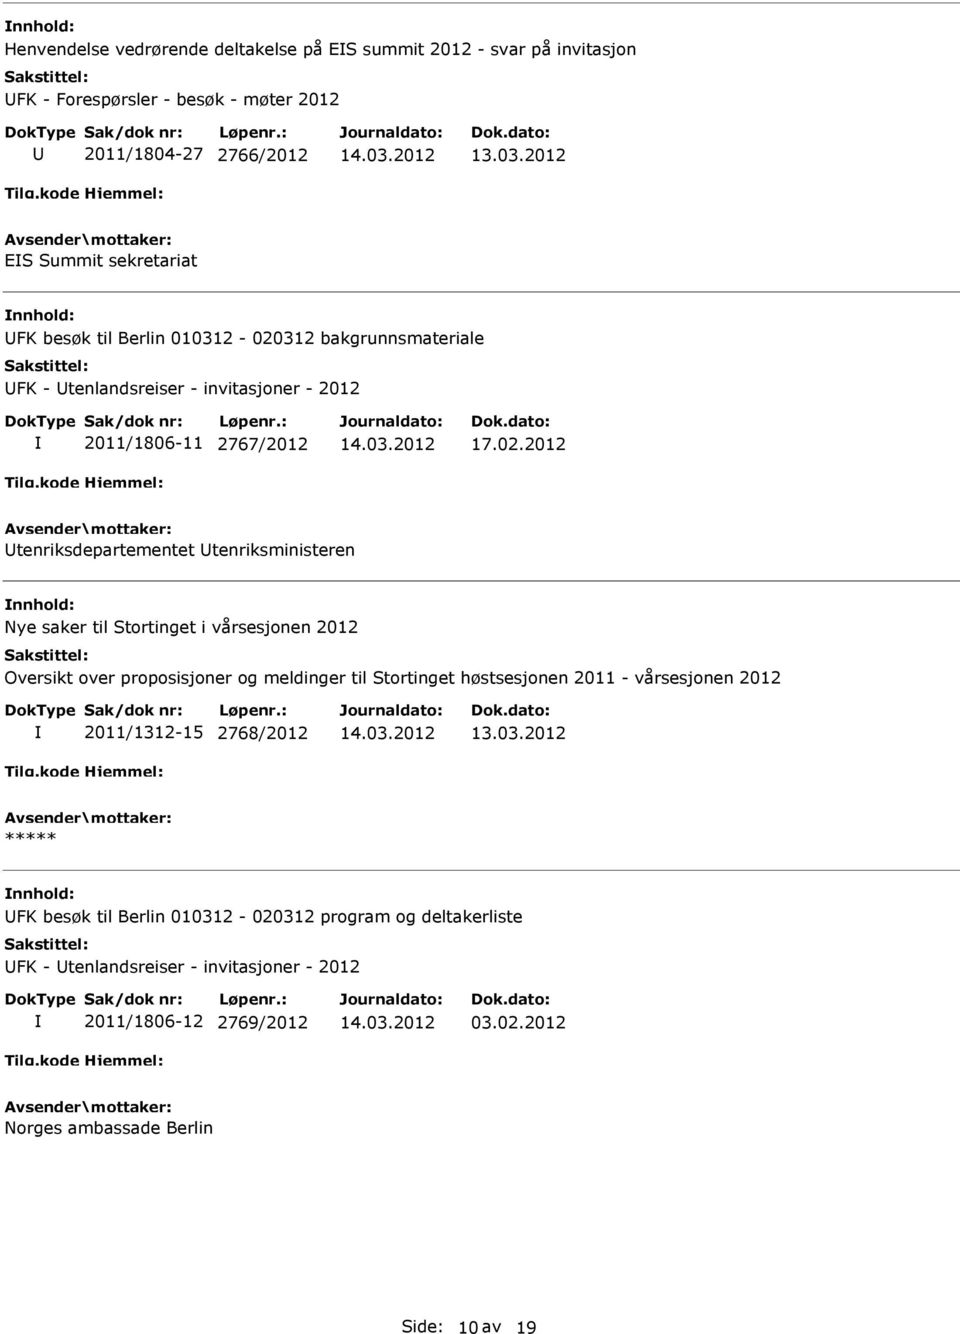 312 bakgrunnsmateriale FK - tenlandsreiser - invitasjoner - 2012 2011/1806-11 2767/2012 17.02.